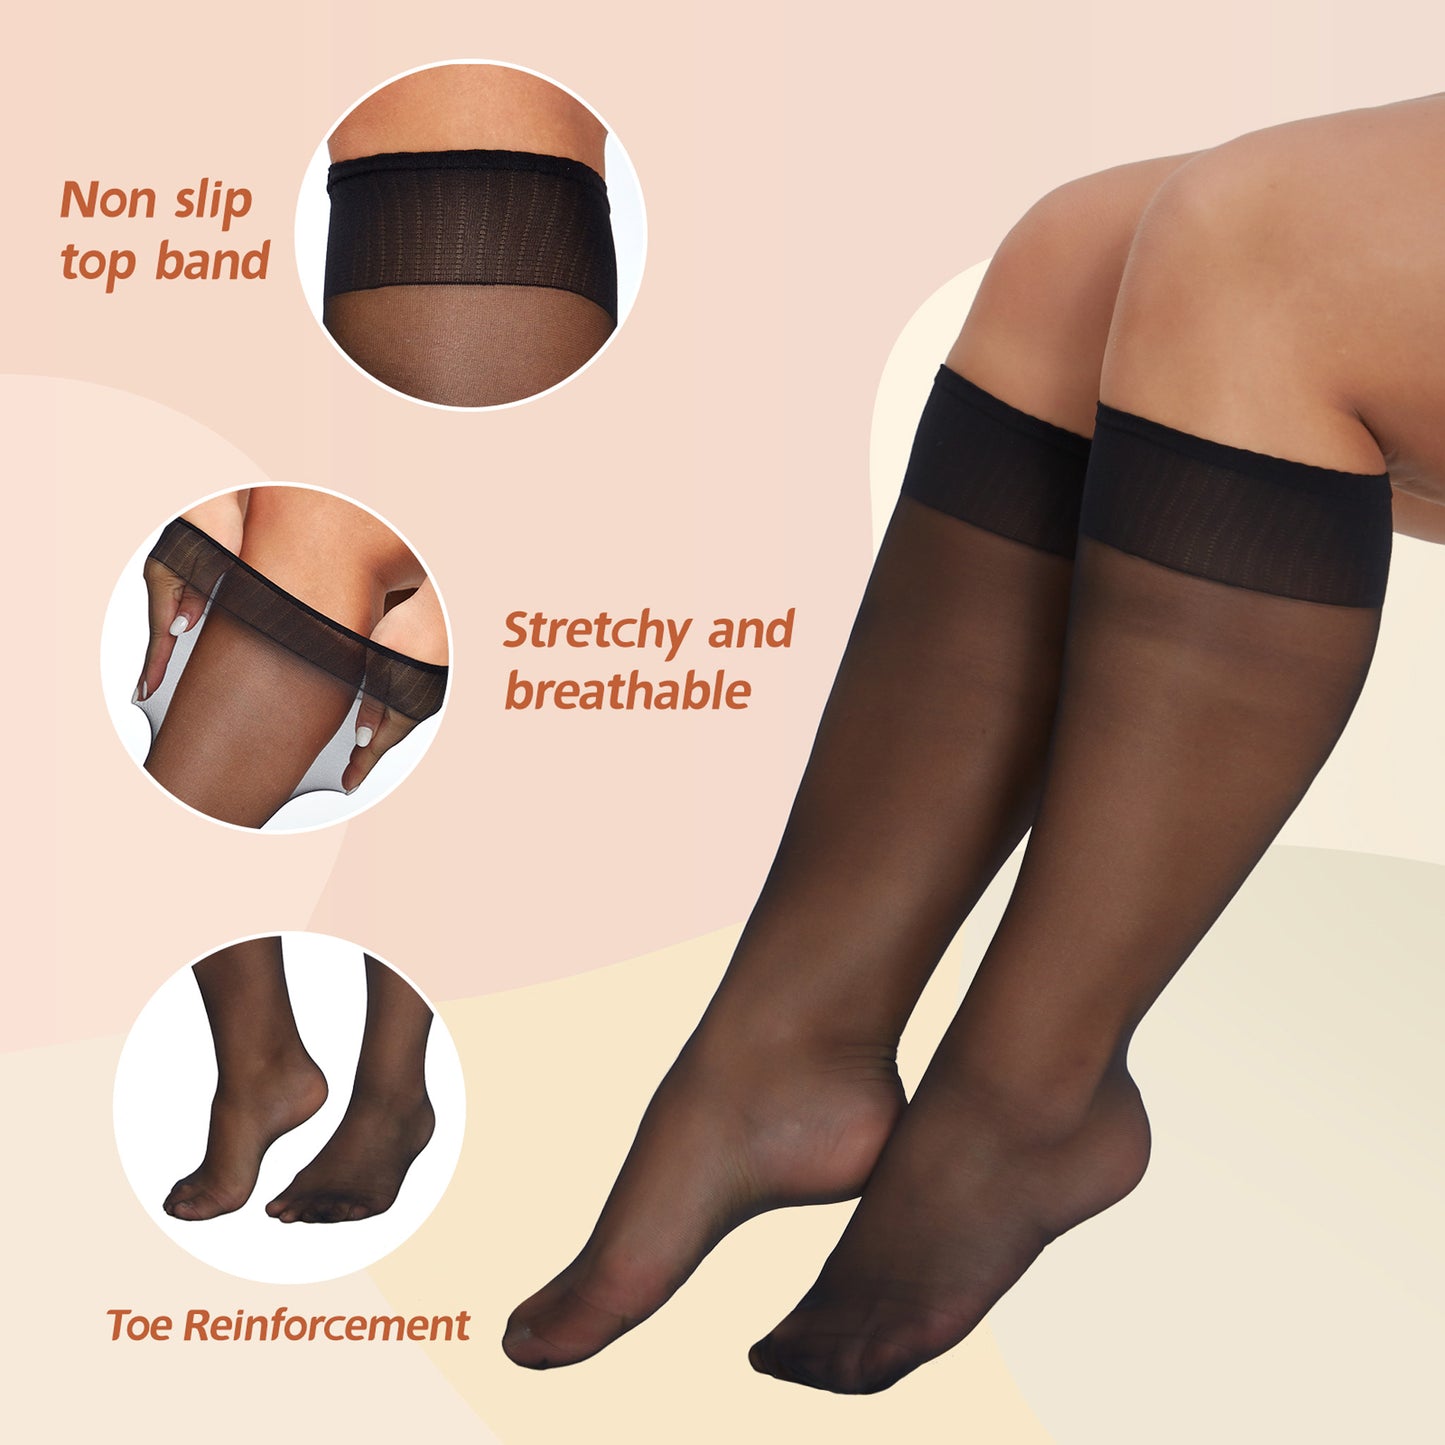 YILANMY Plus Szie Knee High Socks for Women Nylon Sheer Trouser Socks 6Pairs